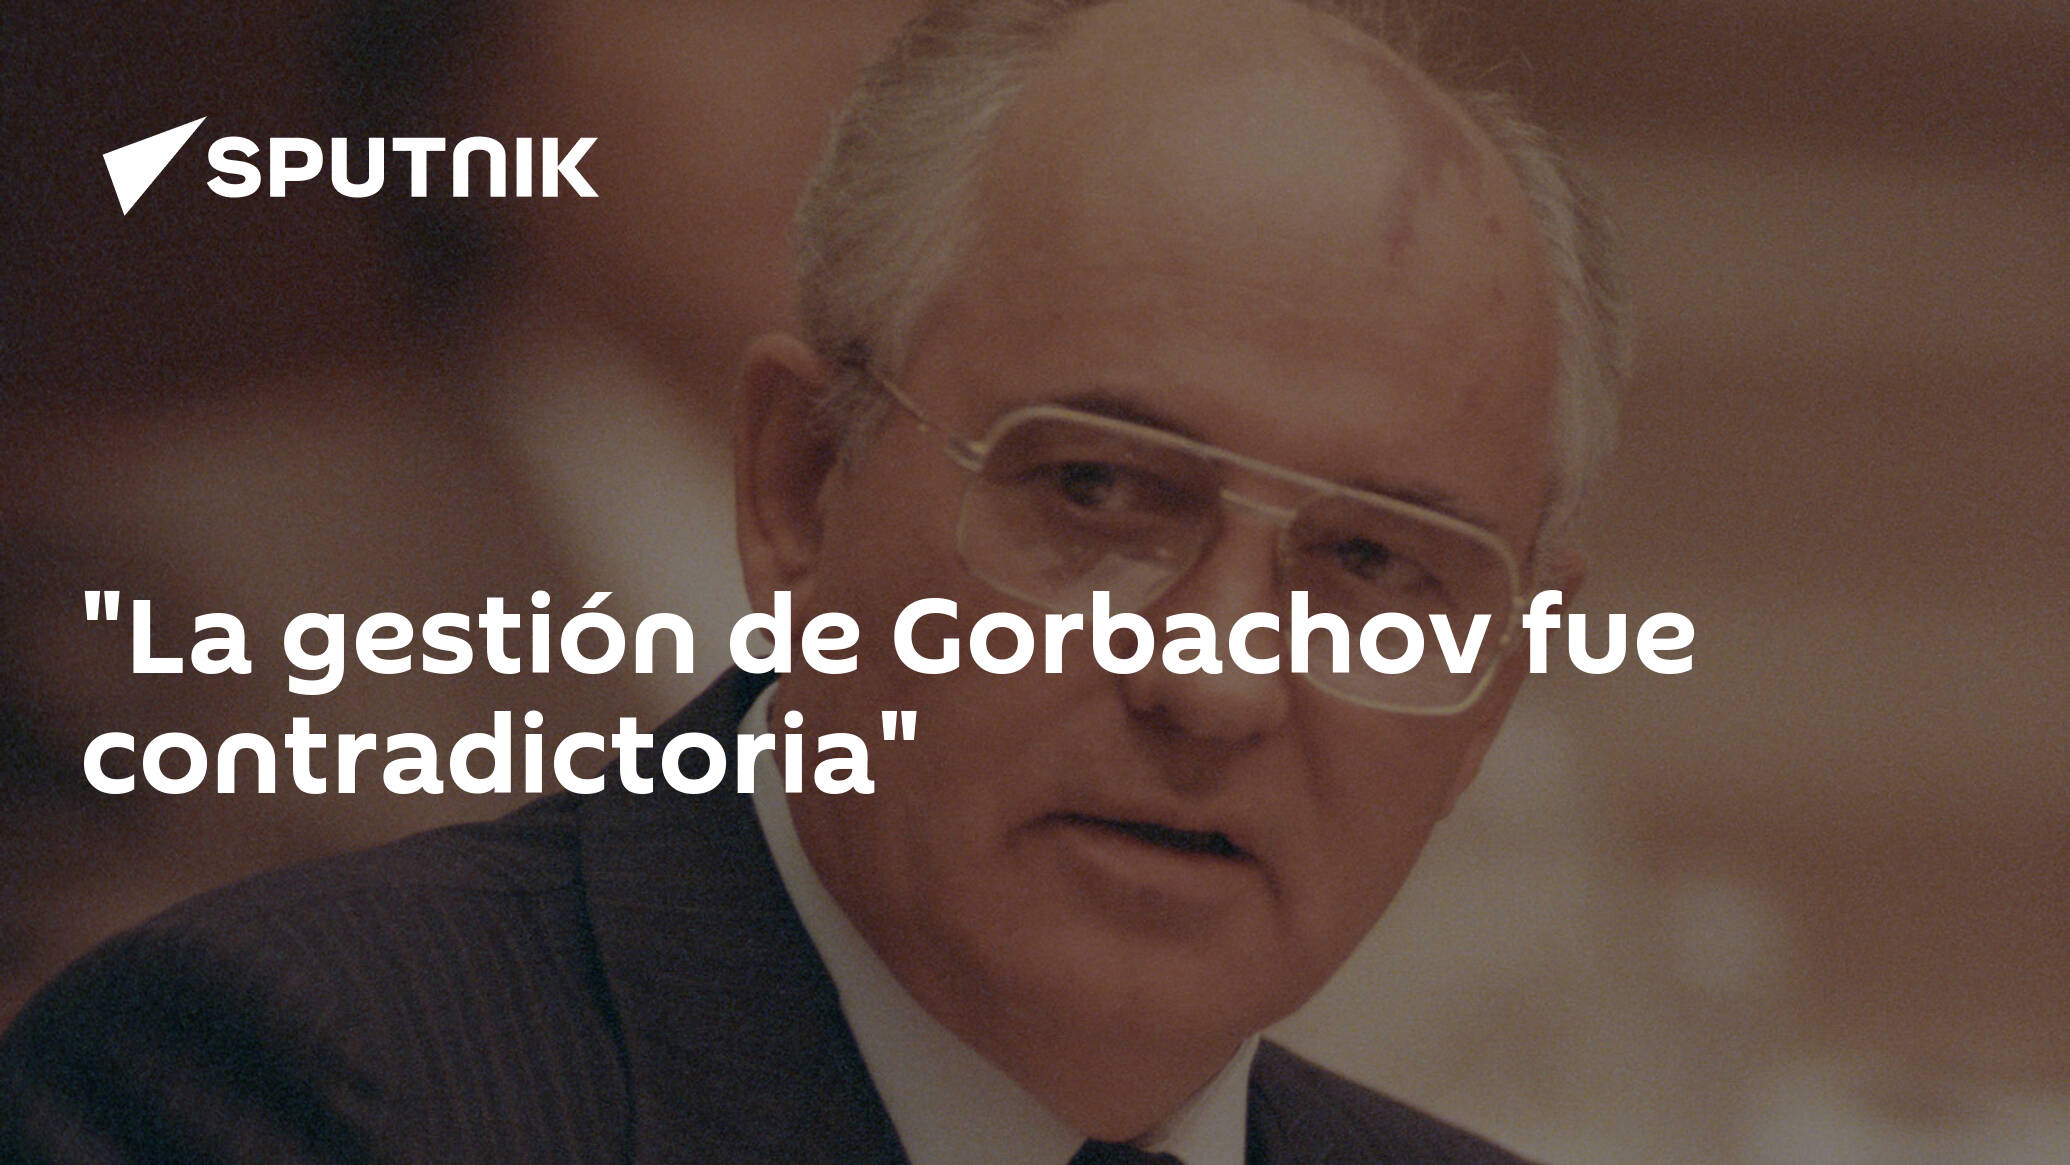 La gestión de Gorbachov fue contradictoria